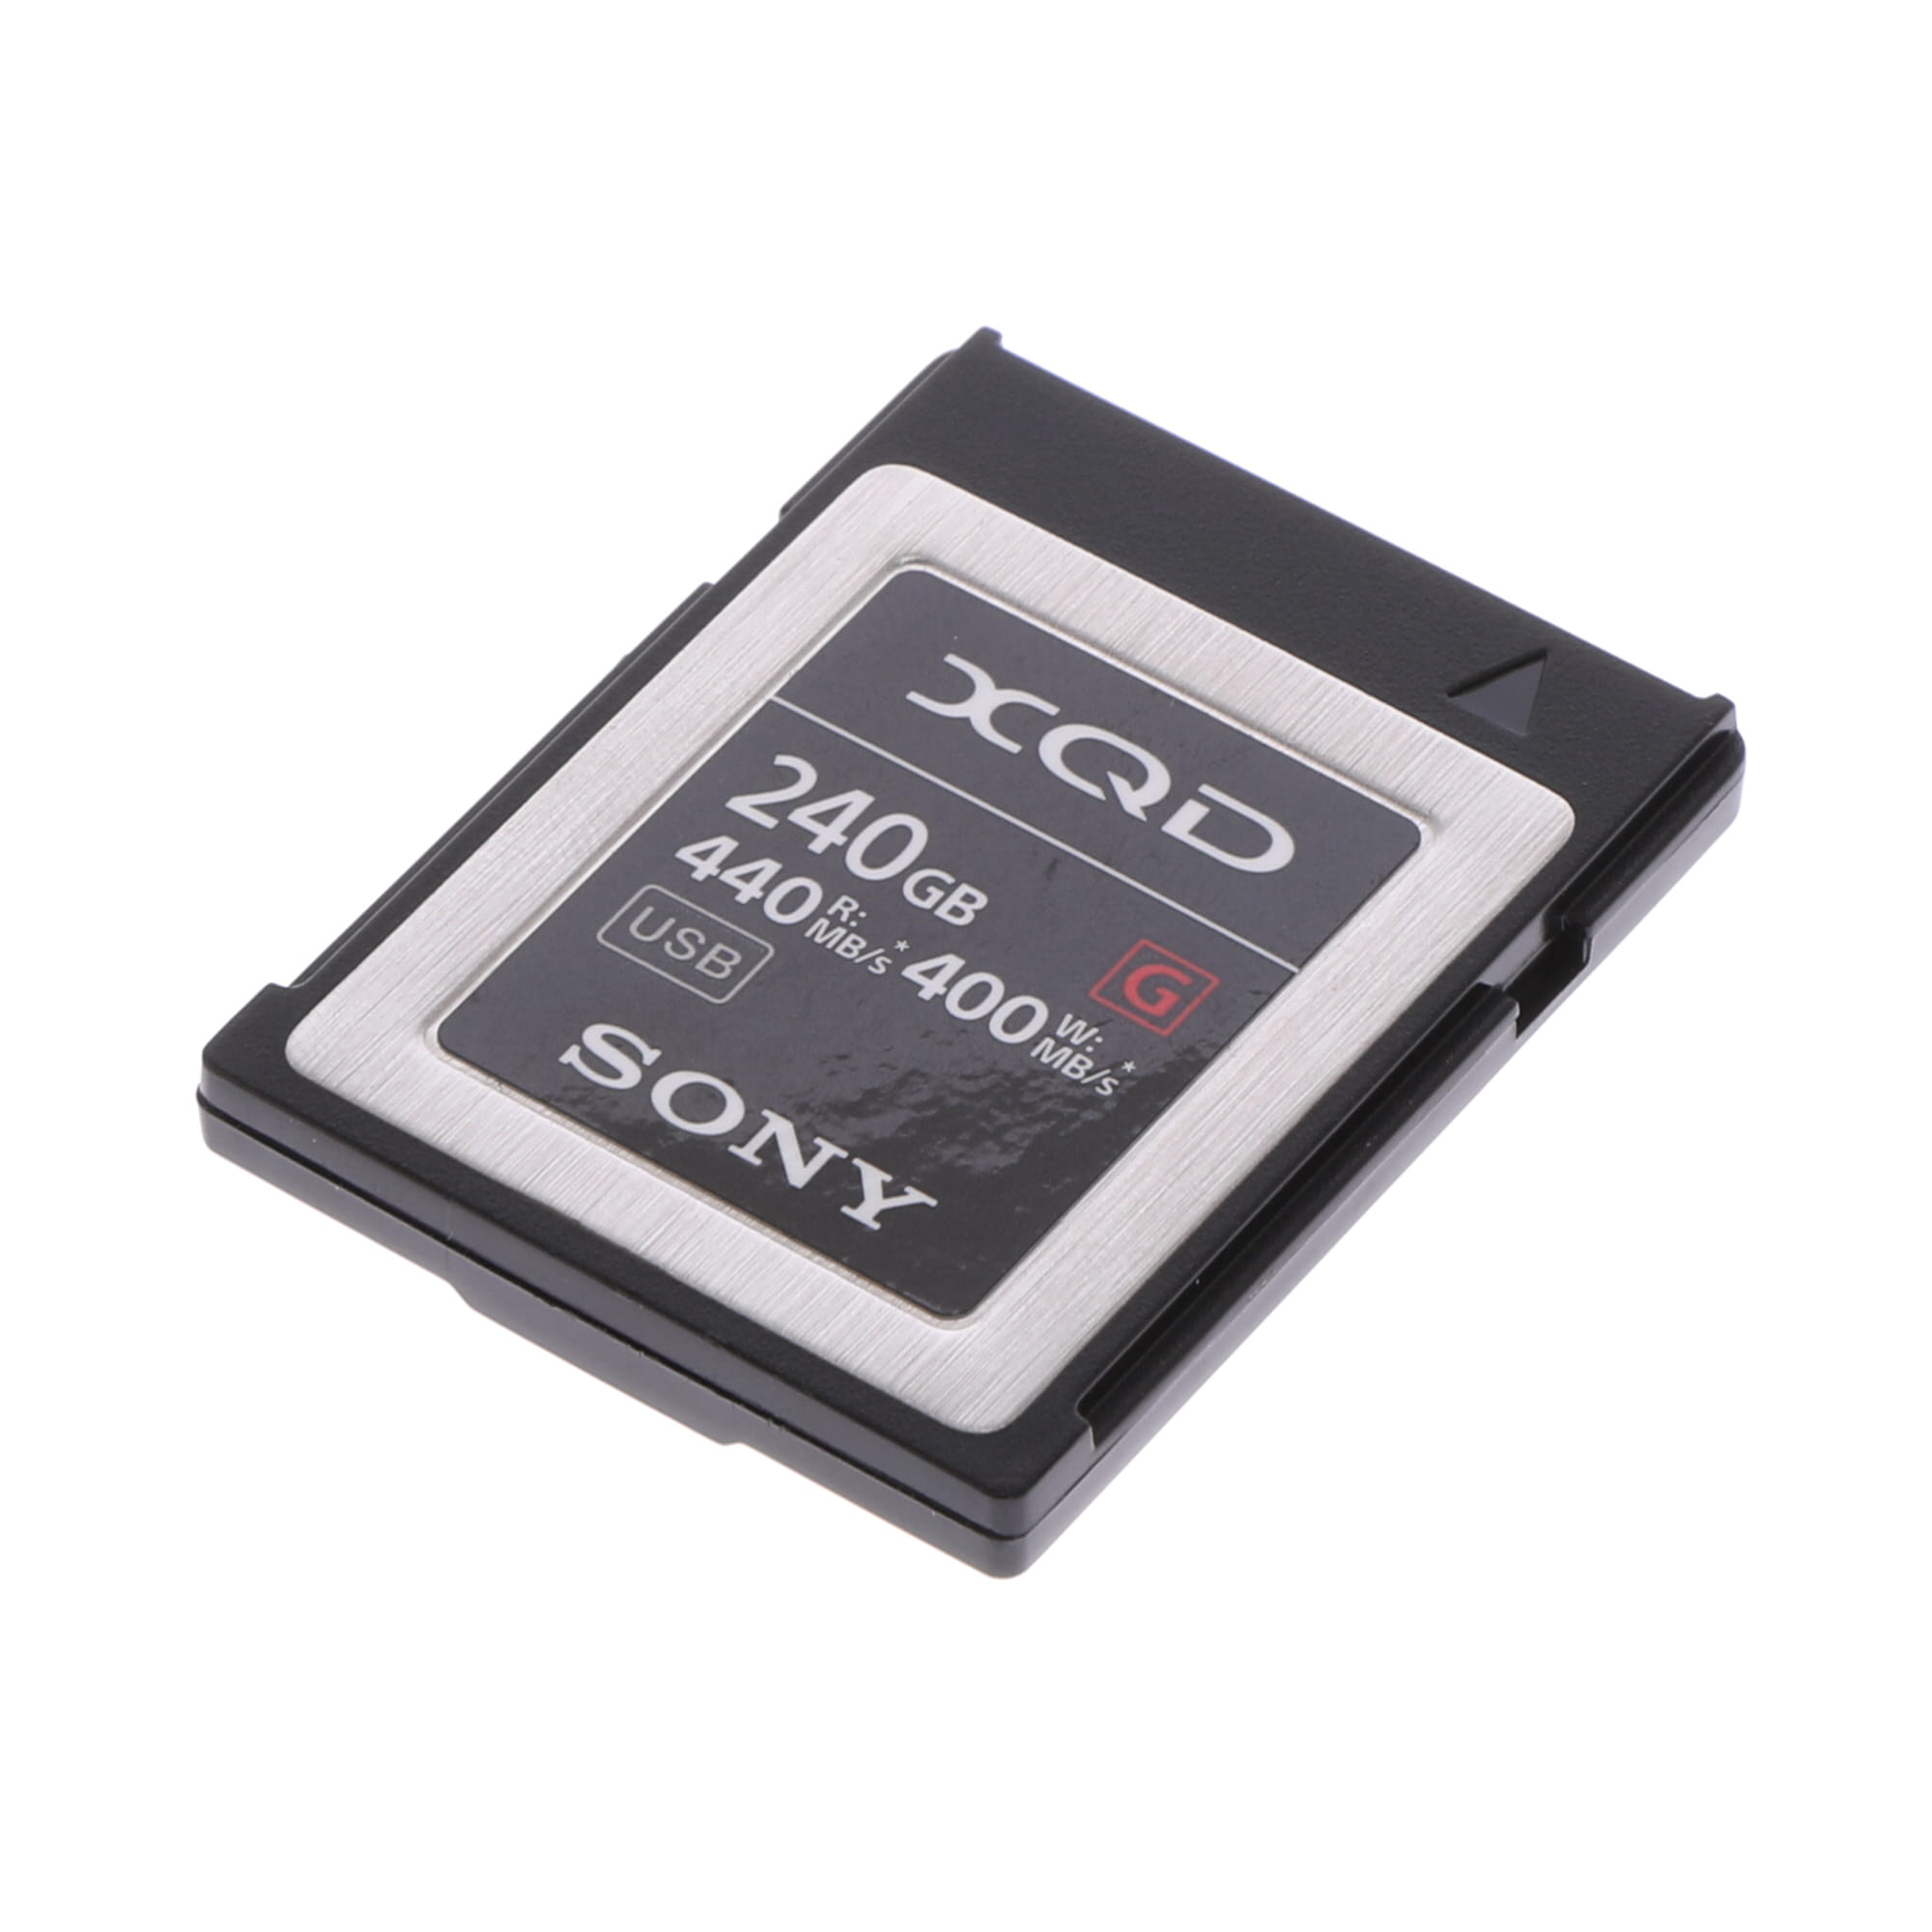 い出のひと時に、とびきりのおしゃれを！ ソニー XQDメモリーカード 240GB QD-G240F